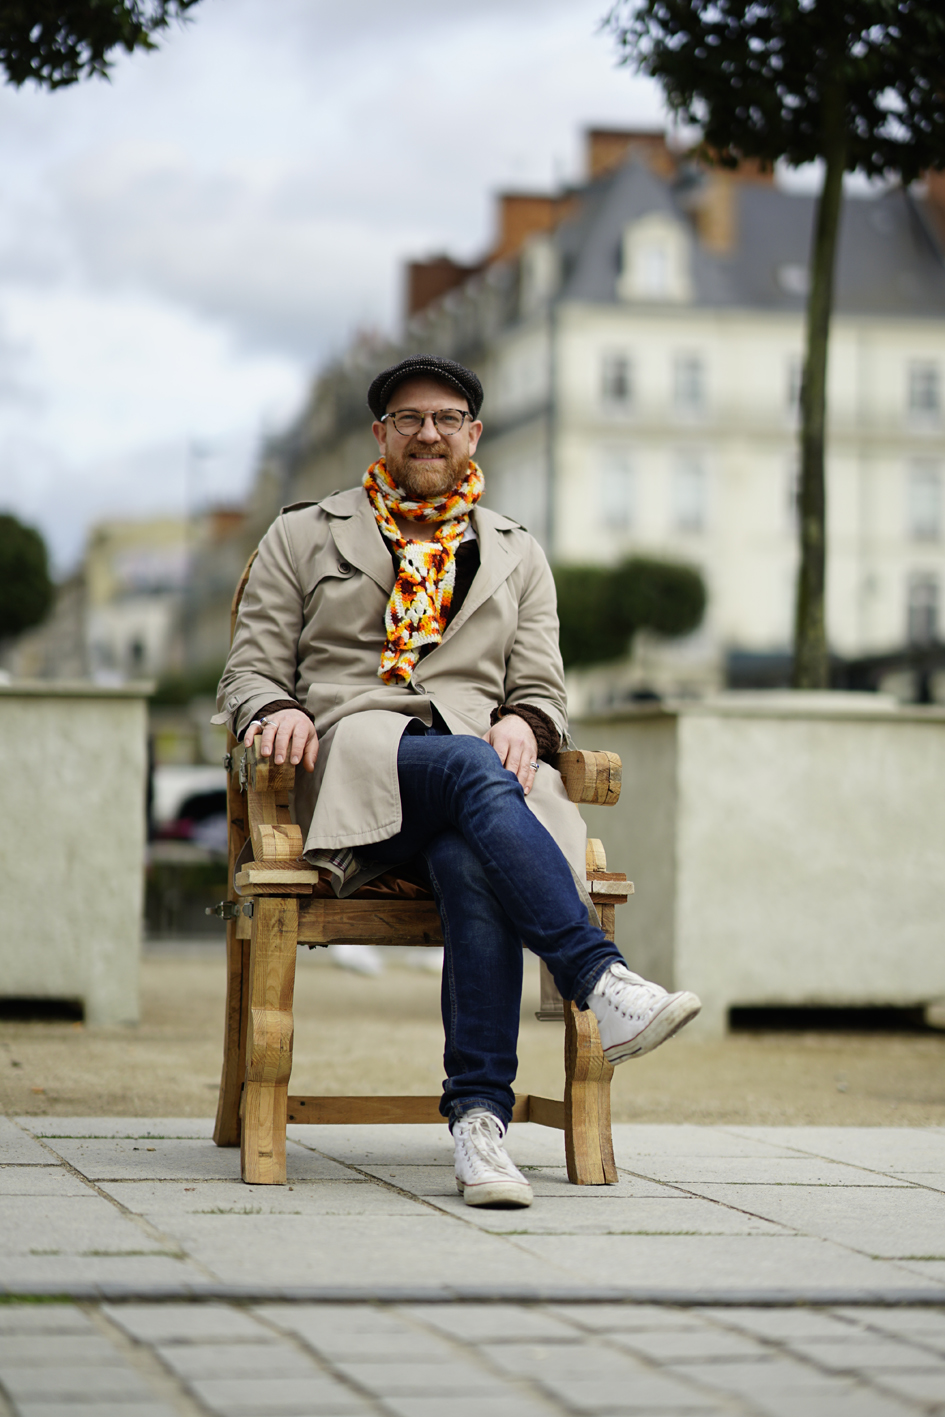 Le fauteuil du député de la rue, Happening, Rennes